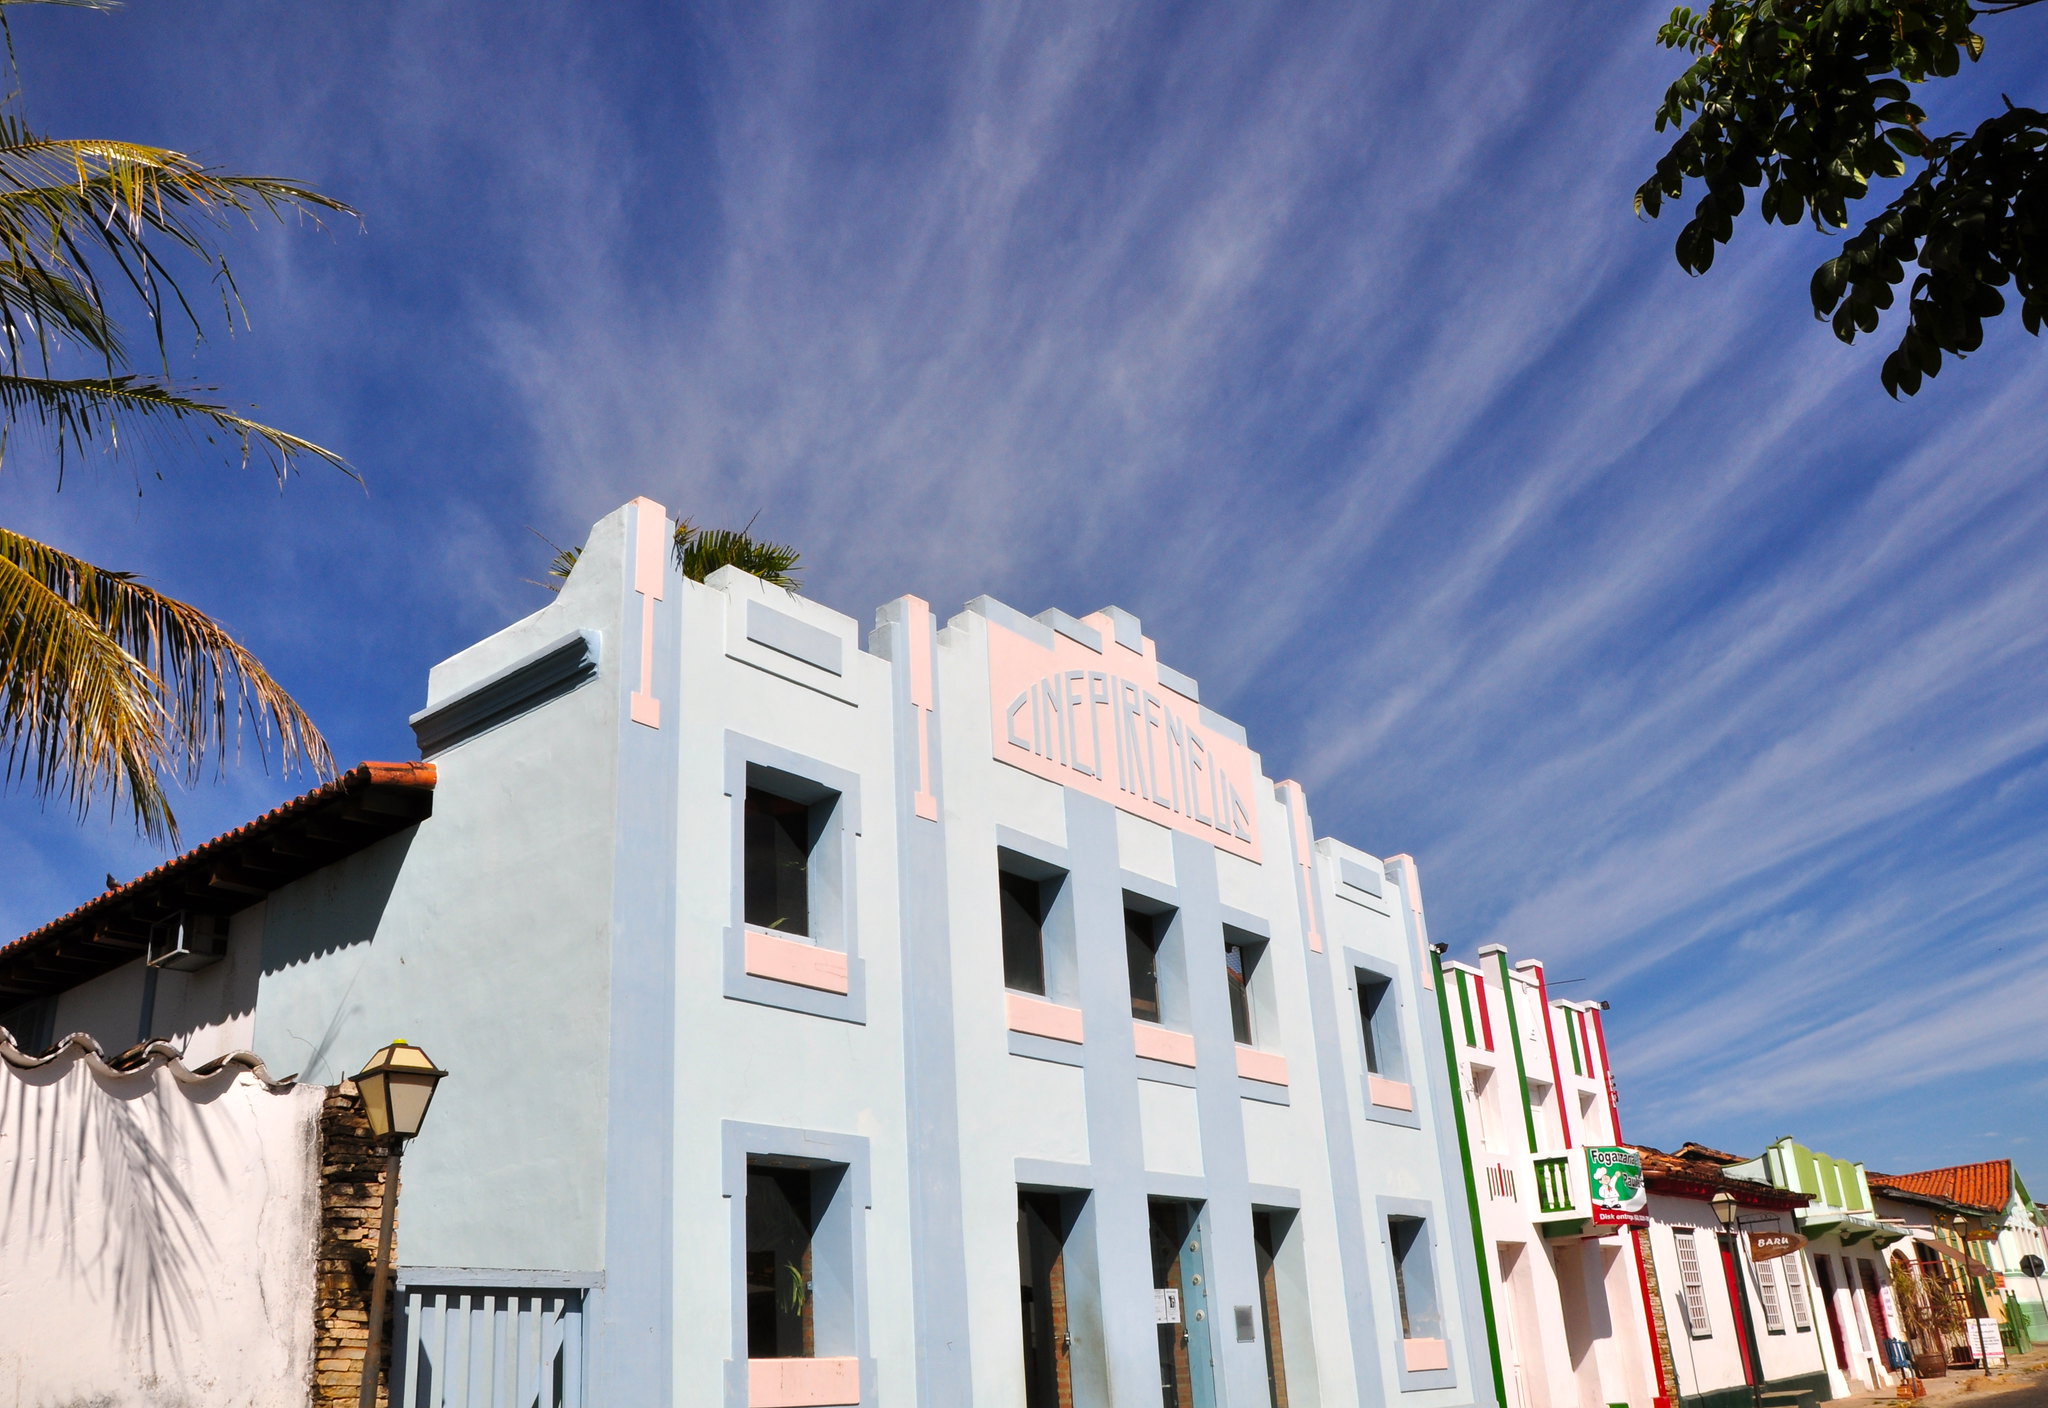 Pouco restou do teatro original de Pirenópolis, em Goiás (Foto: Elaine Rodrigues/Flickr)